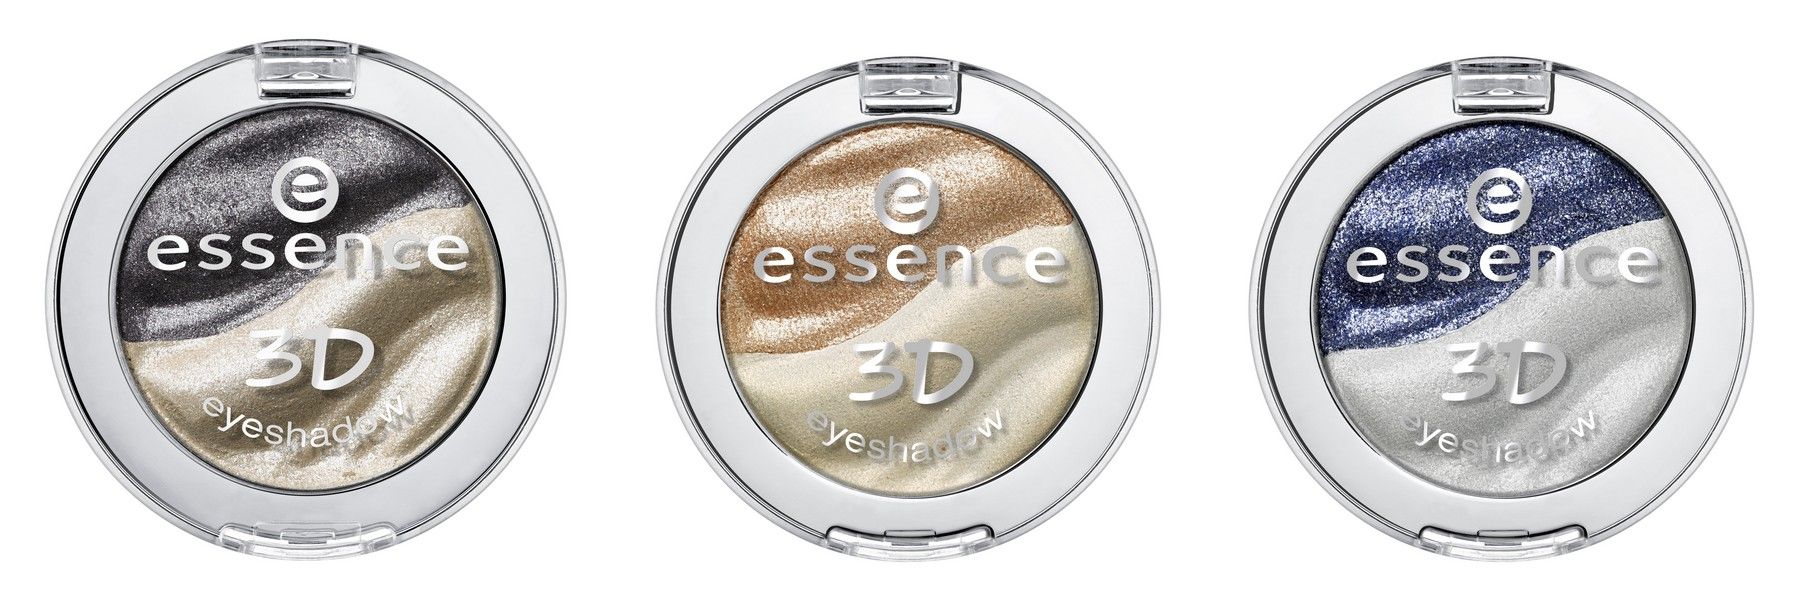 essence 3D eyeshadow